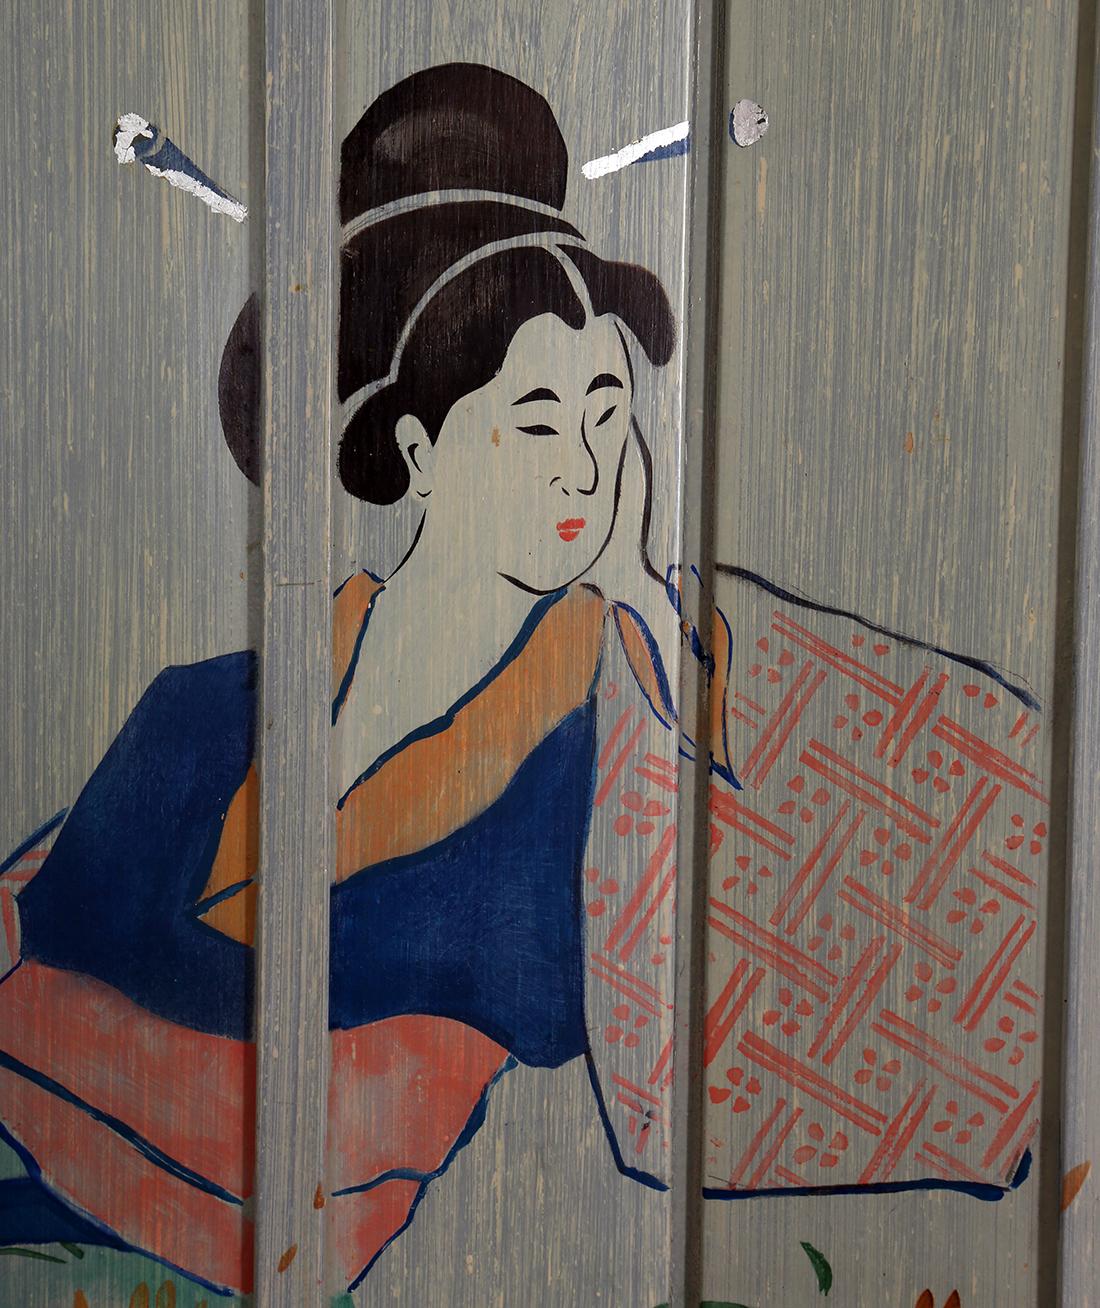 Orientalist Painted Folding Screen - Post-Modern Art by Liedeke Bulder